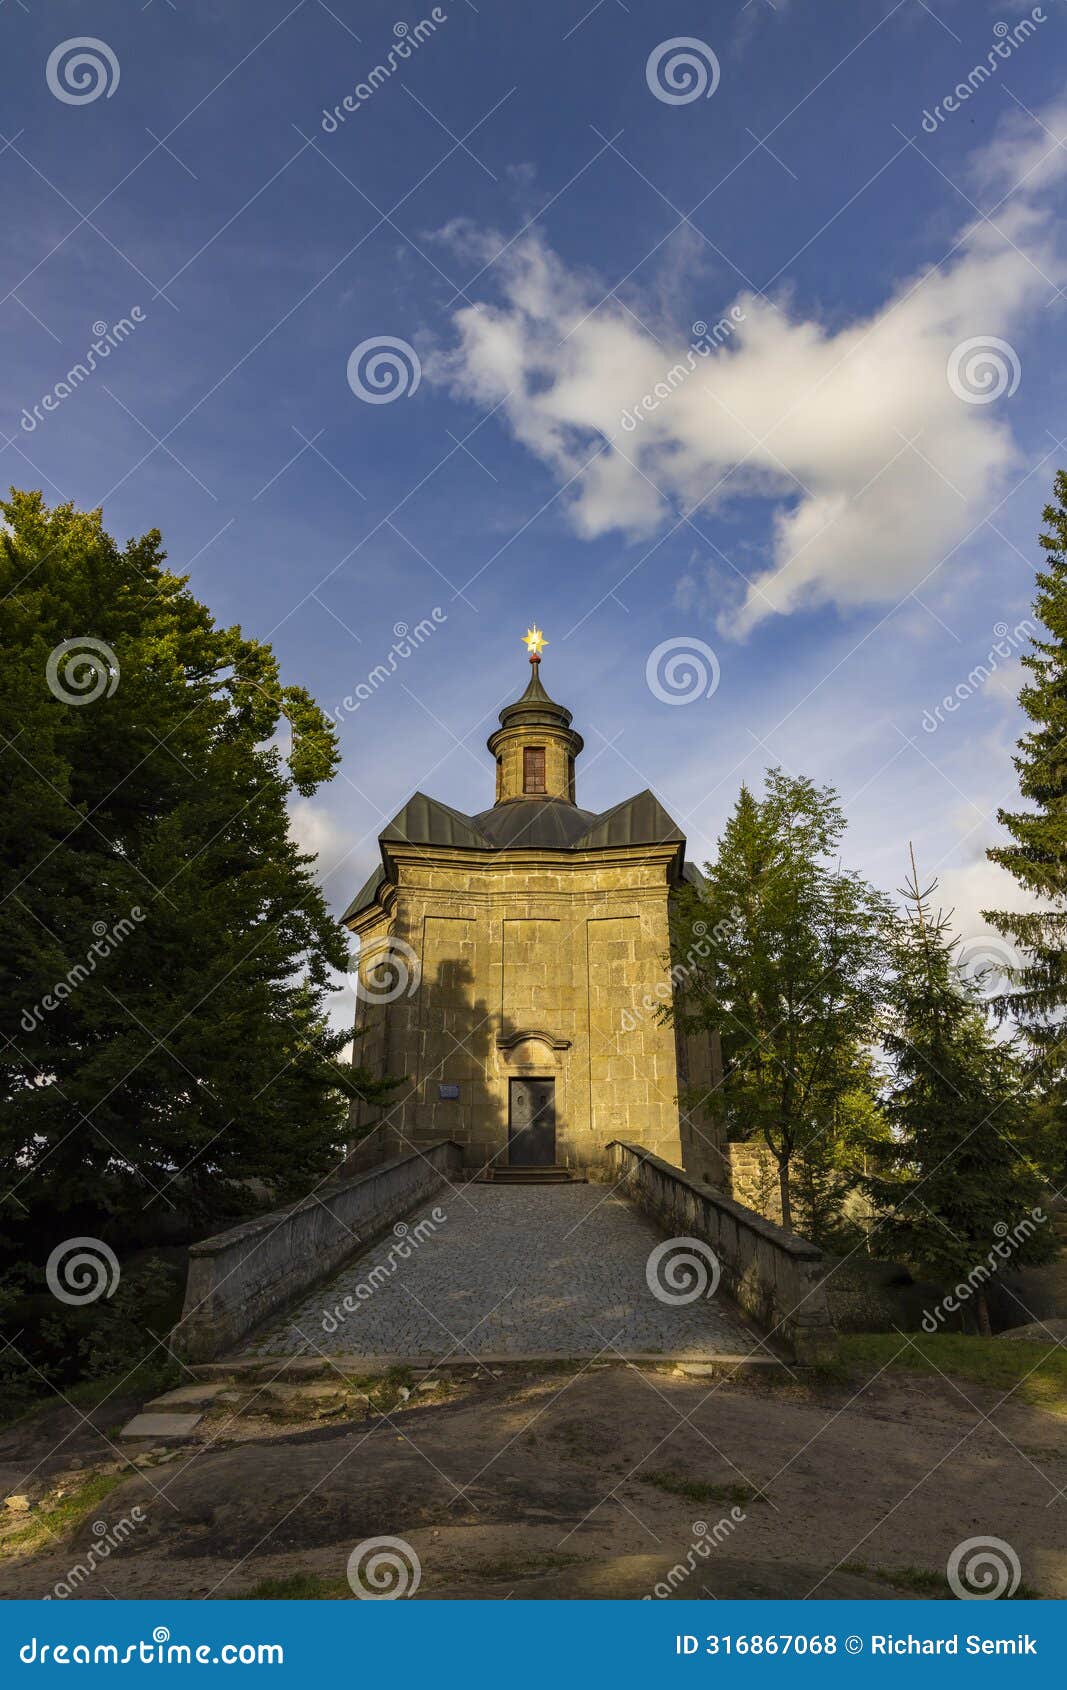 hvezda church in broumovske steny, eastern bohemia, czech republic